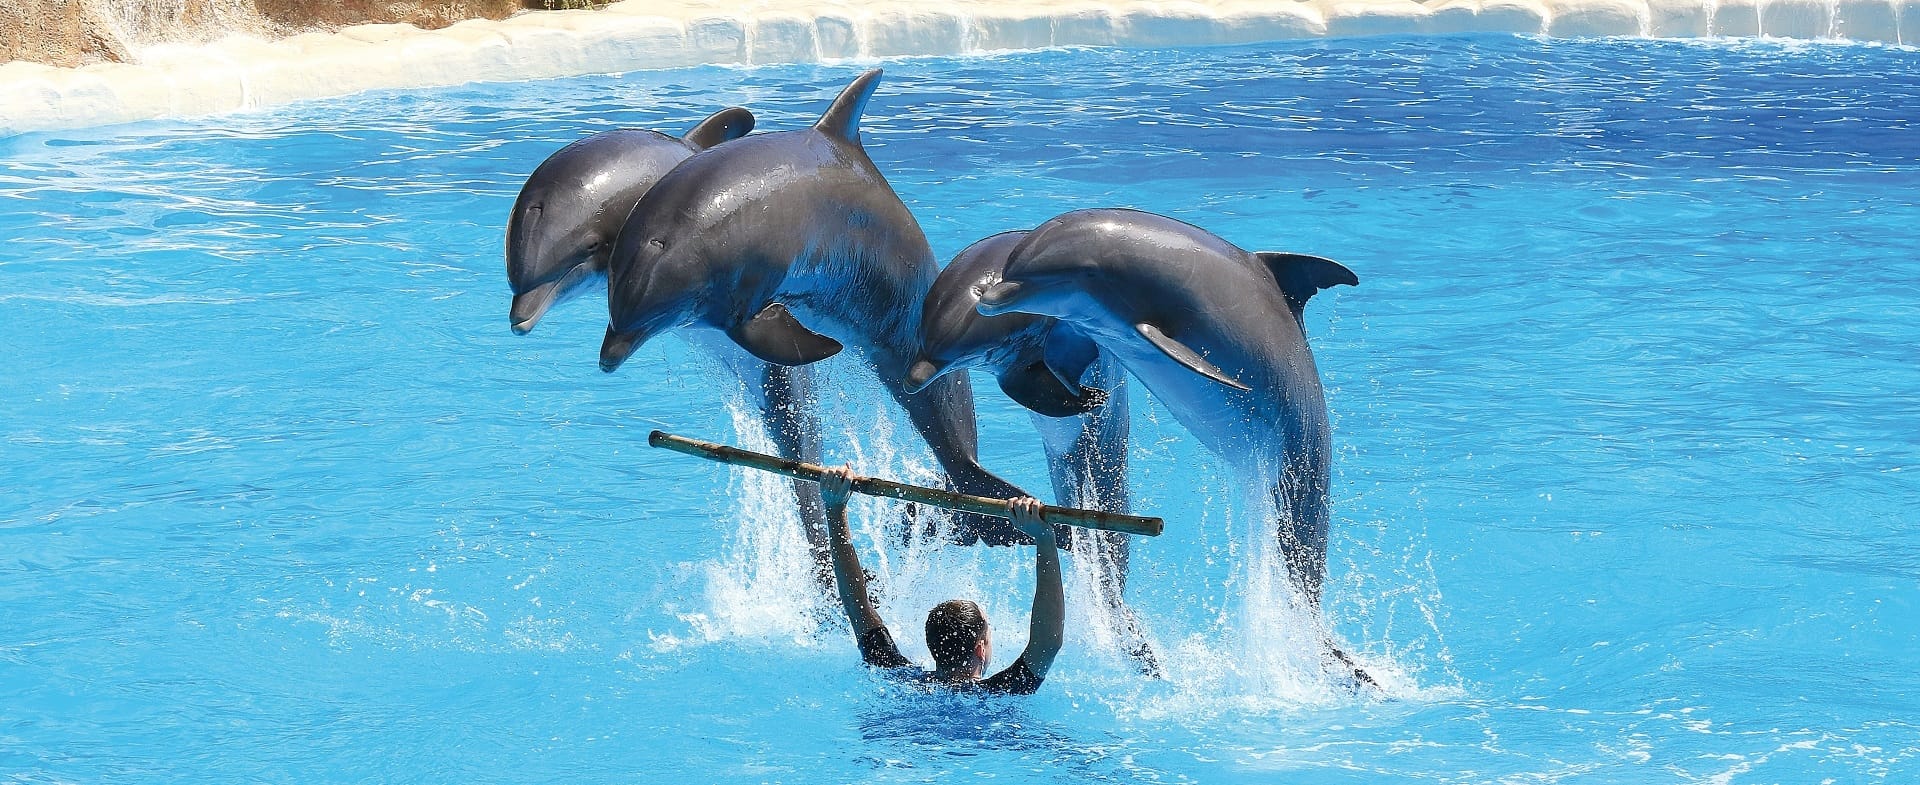 3 dauphins sautant par-dessus un plongeur